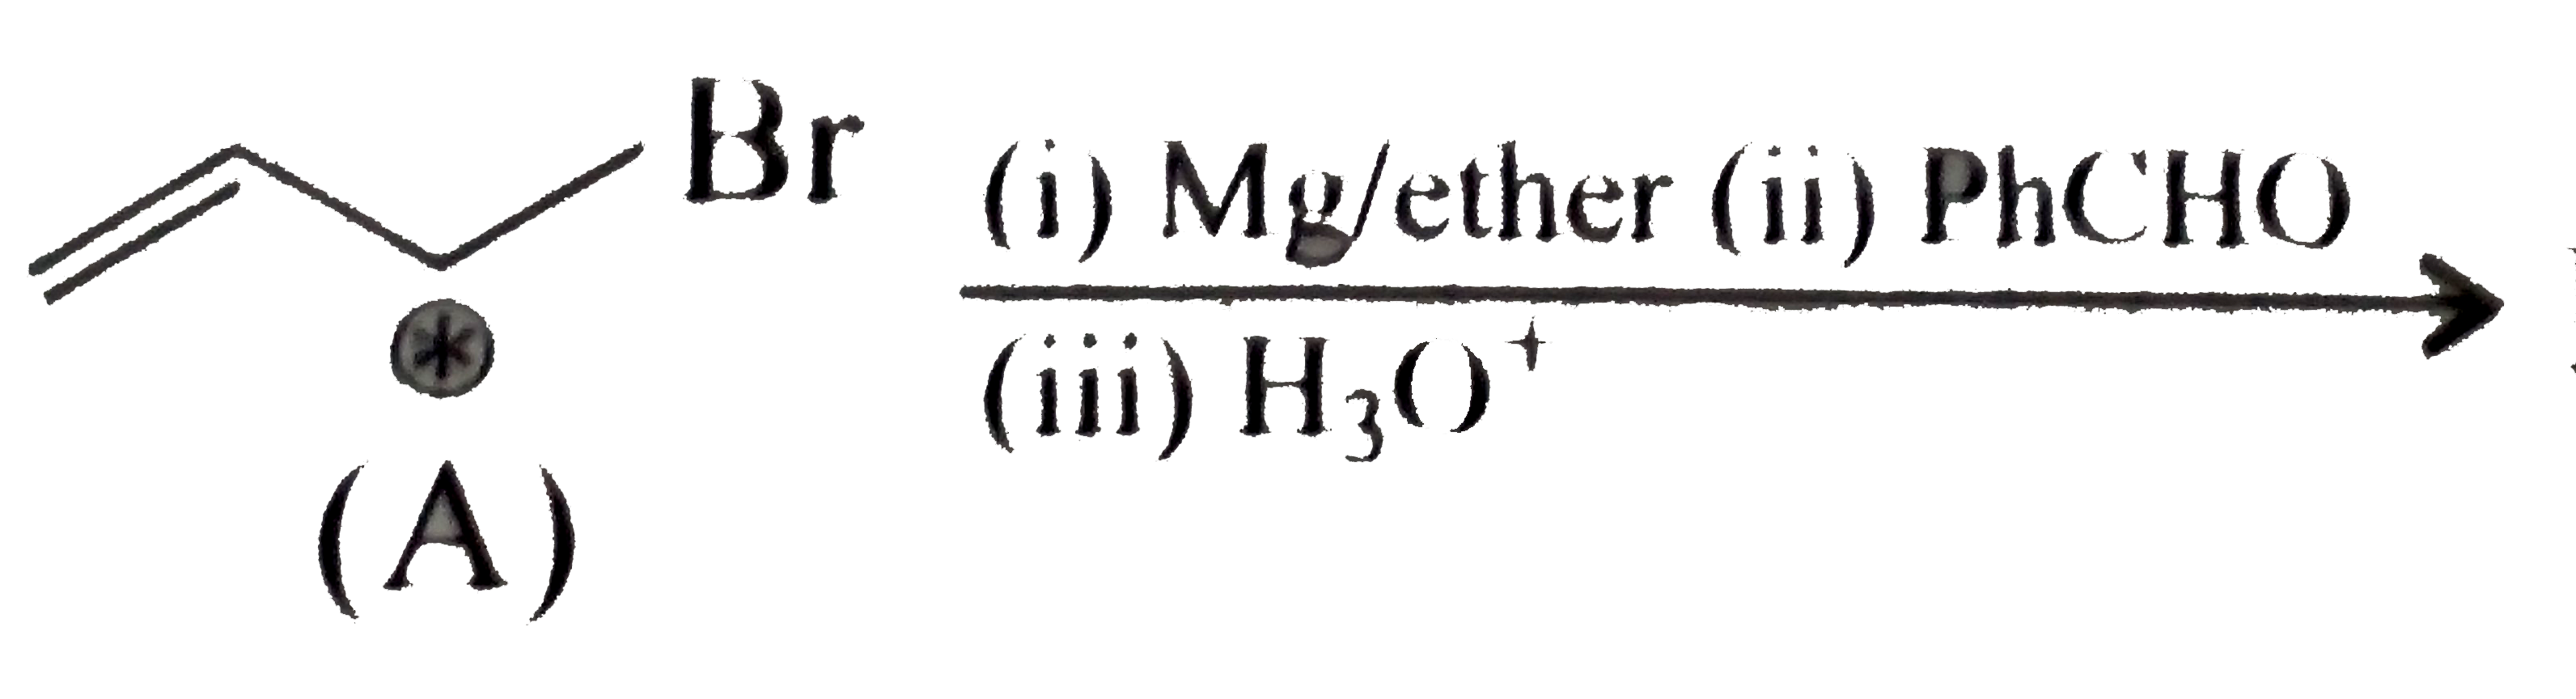 overset((i)Mg//ether(ii)PhCHO)underset((iii)H(3)O^(+))rarr Products